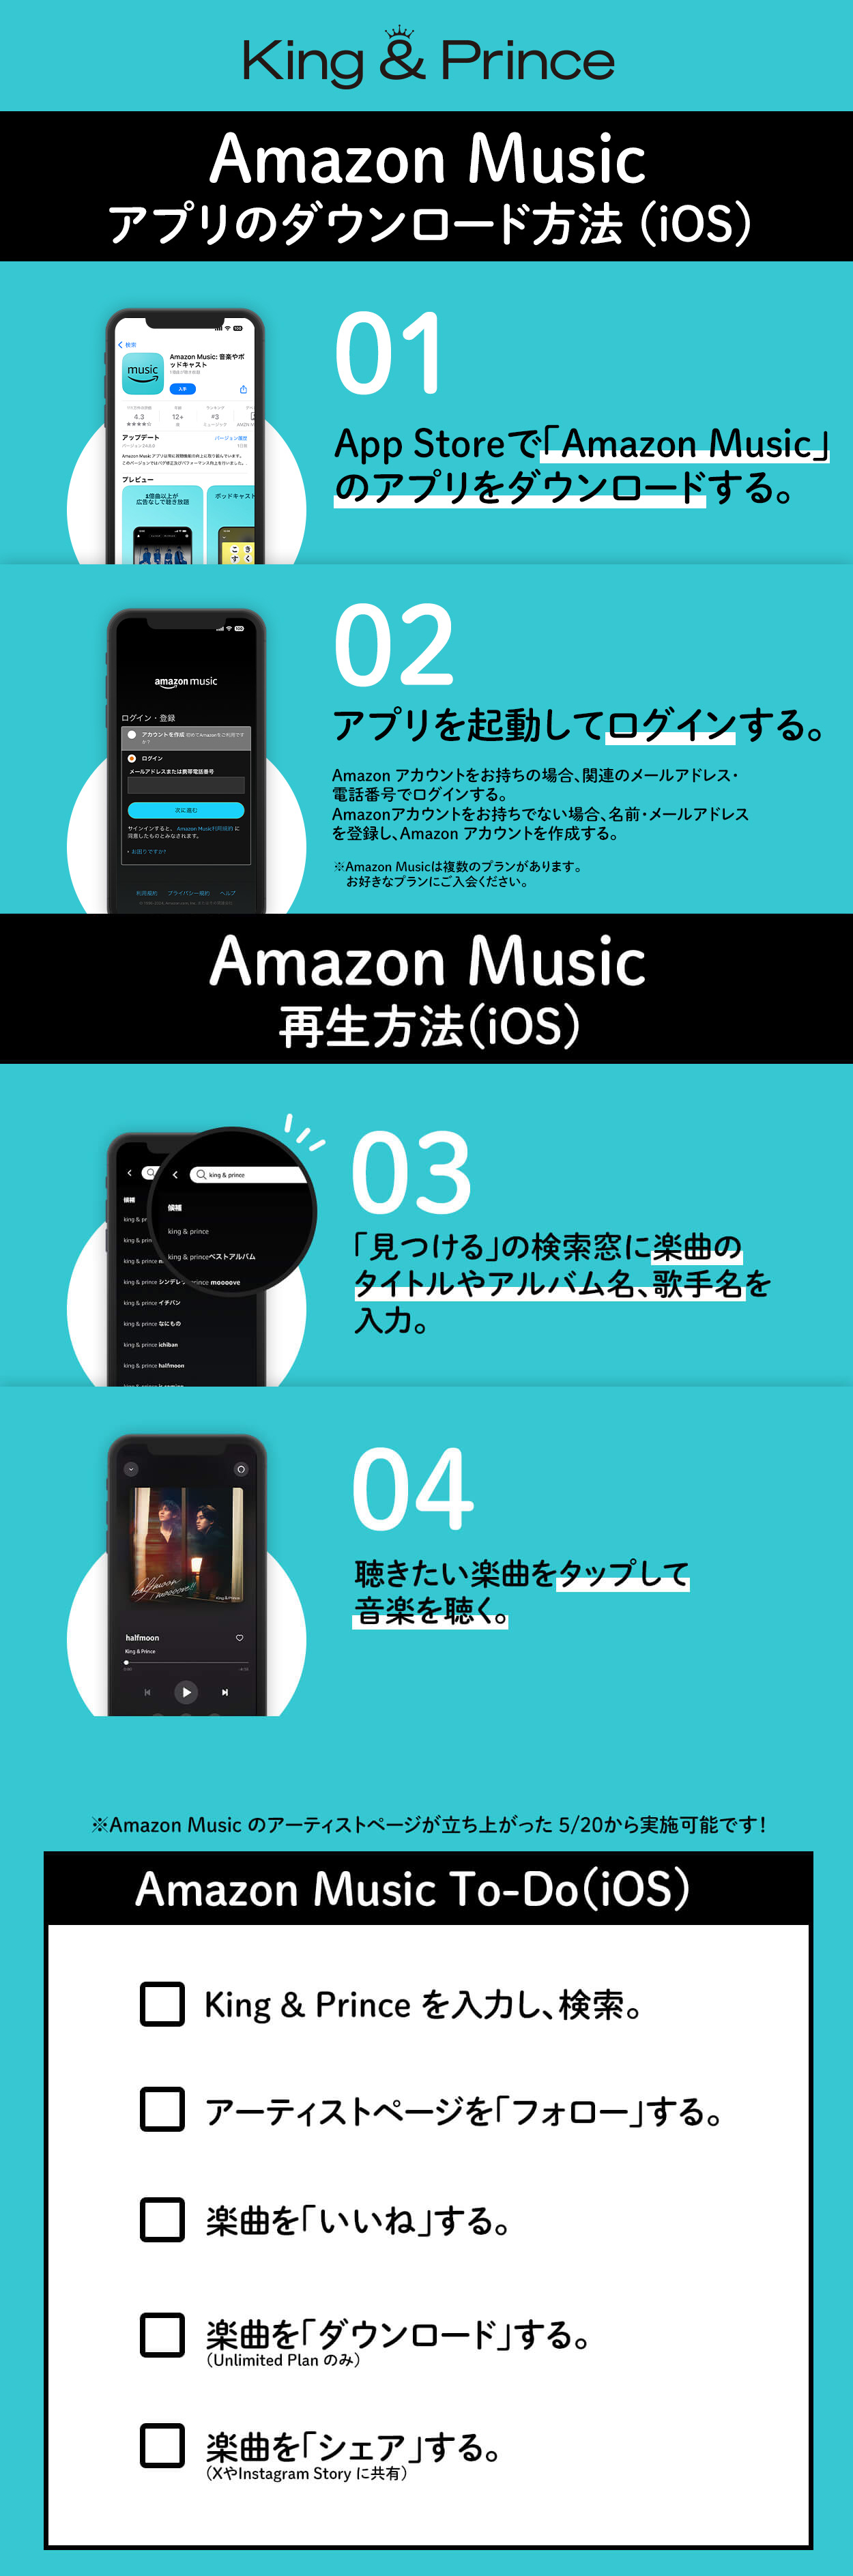 amazon music利用方法について